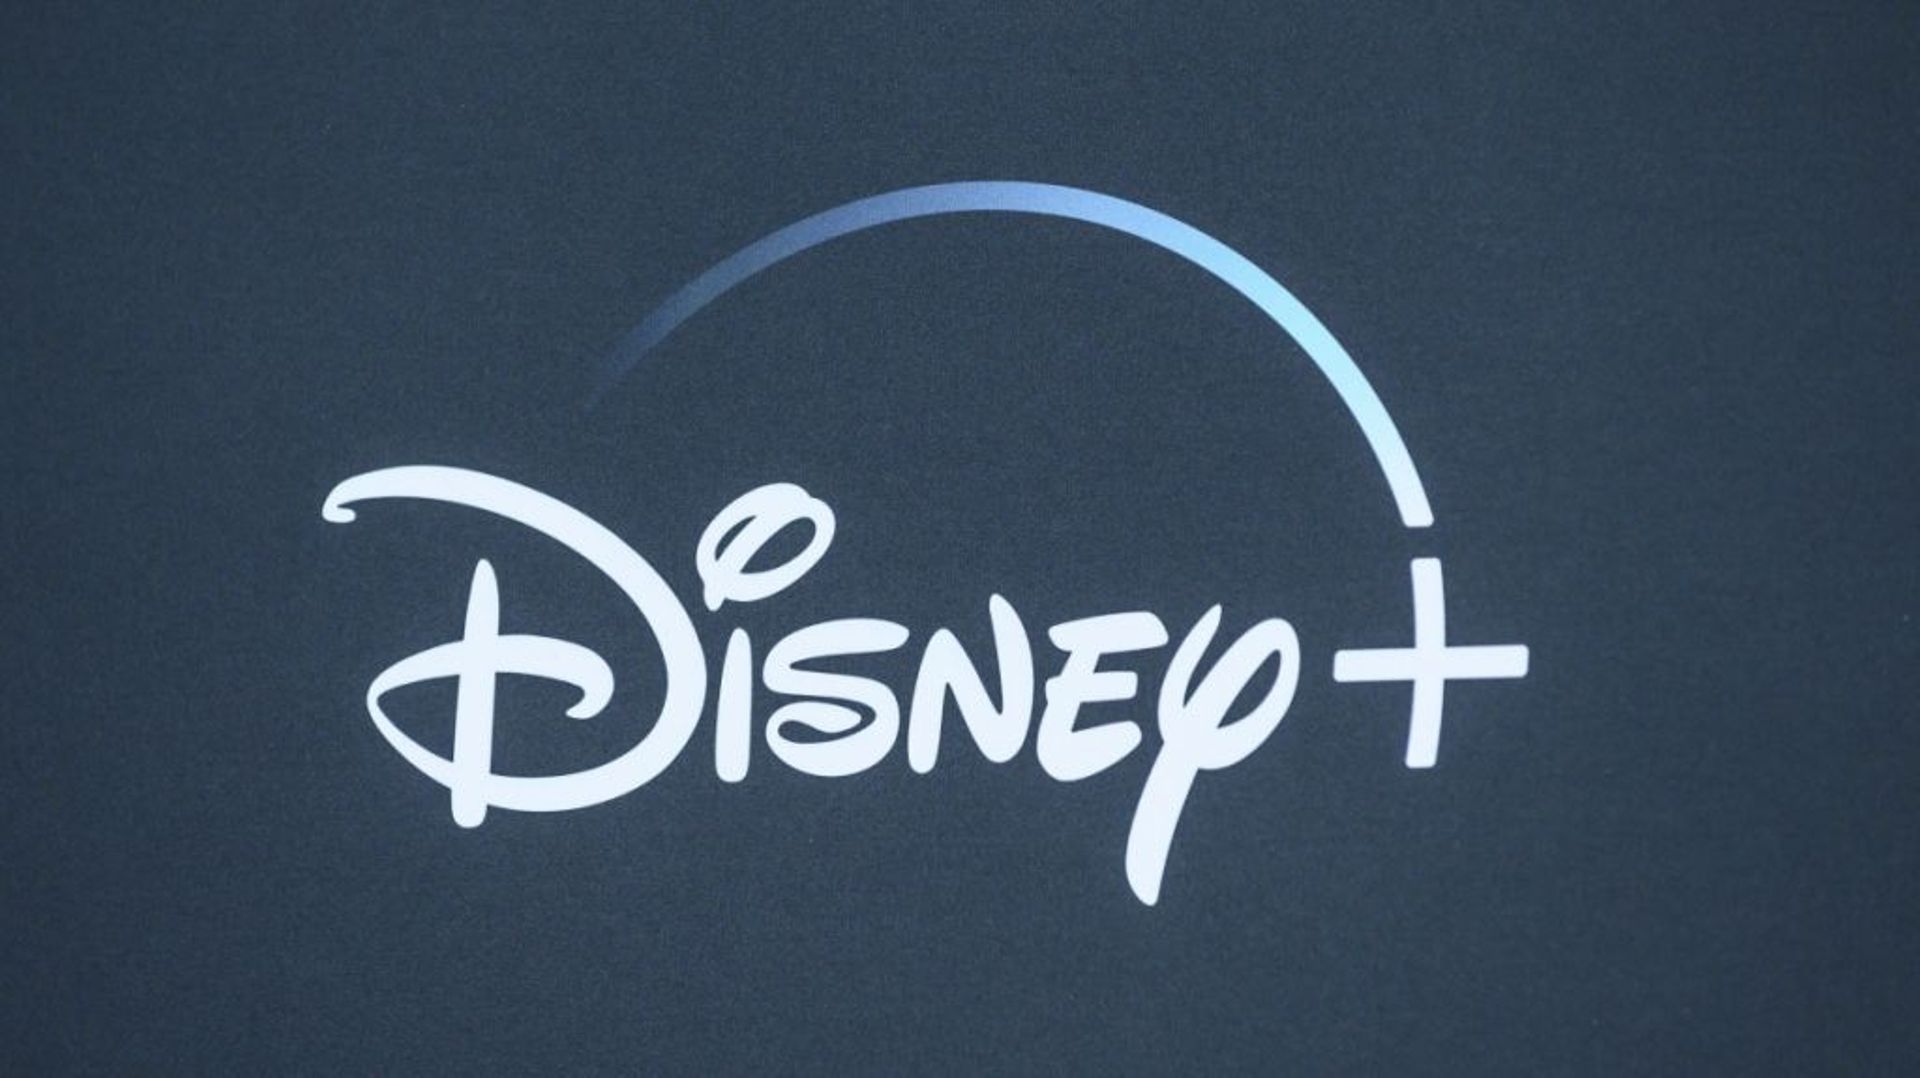 Le géant du divertissement Disney comptait début janvier près de 130 millions d'abonnés à son service de vidéo en ligne Disney+, un chiffre bien supérieur aux attentes